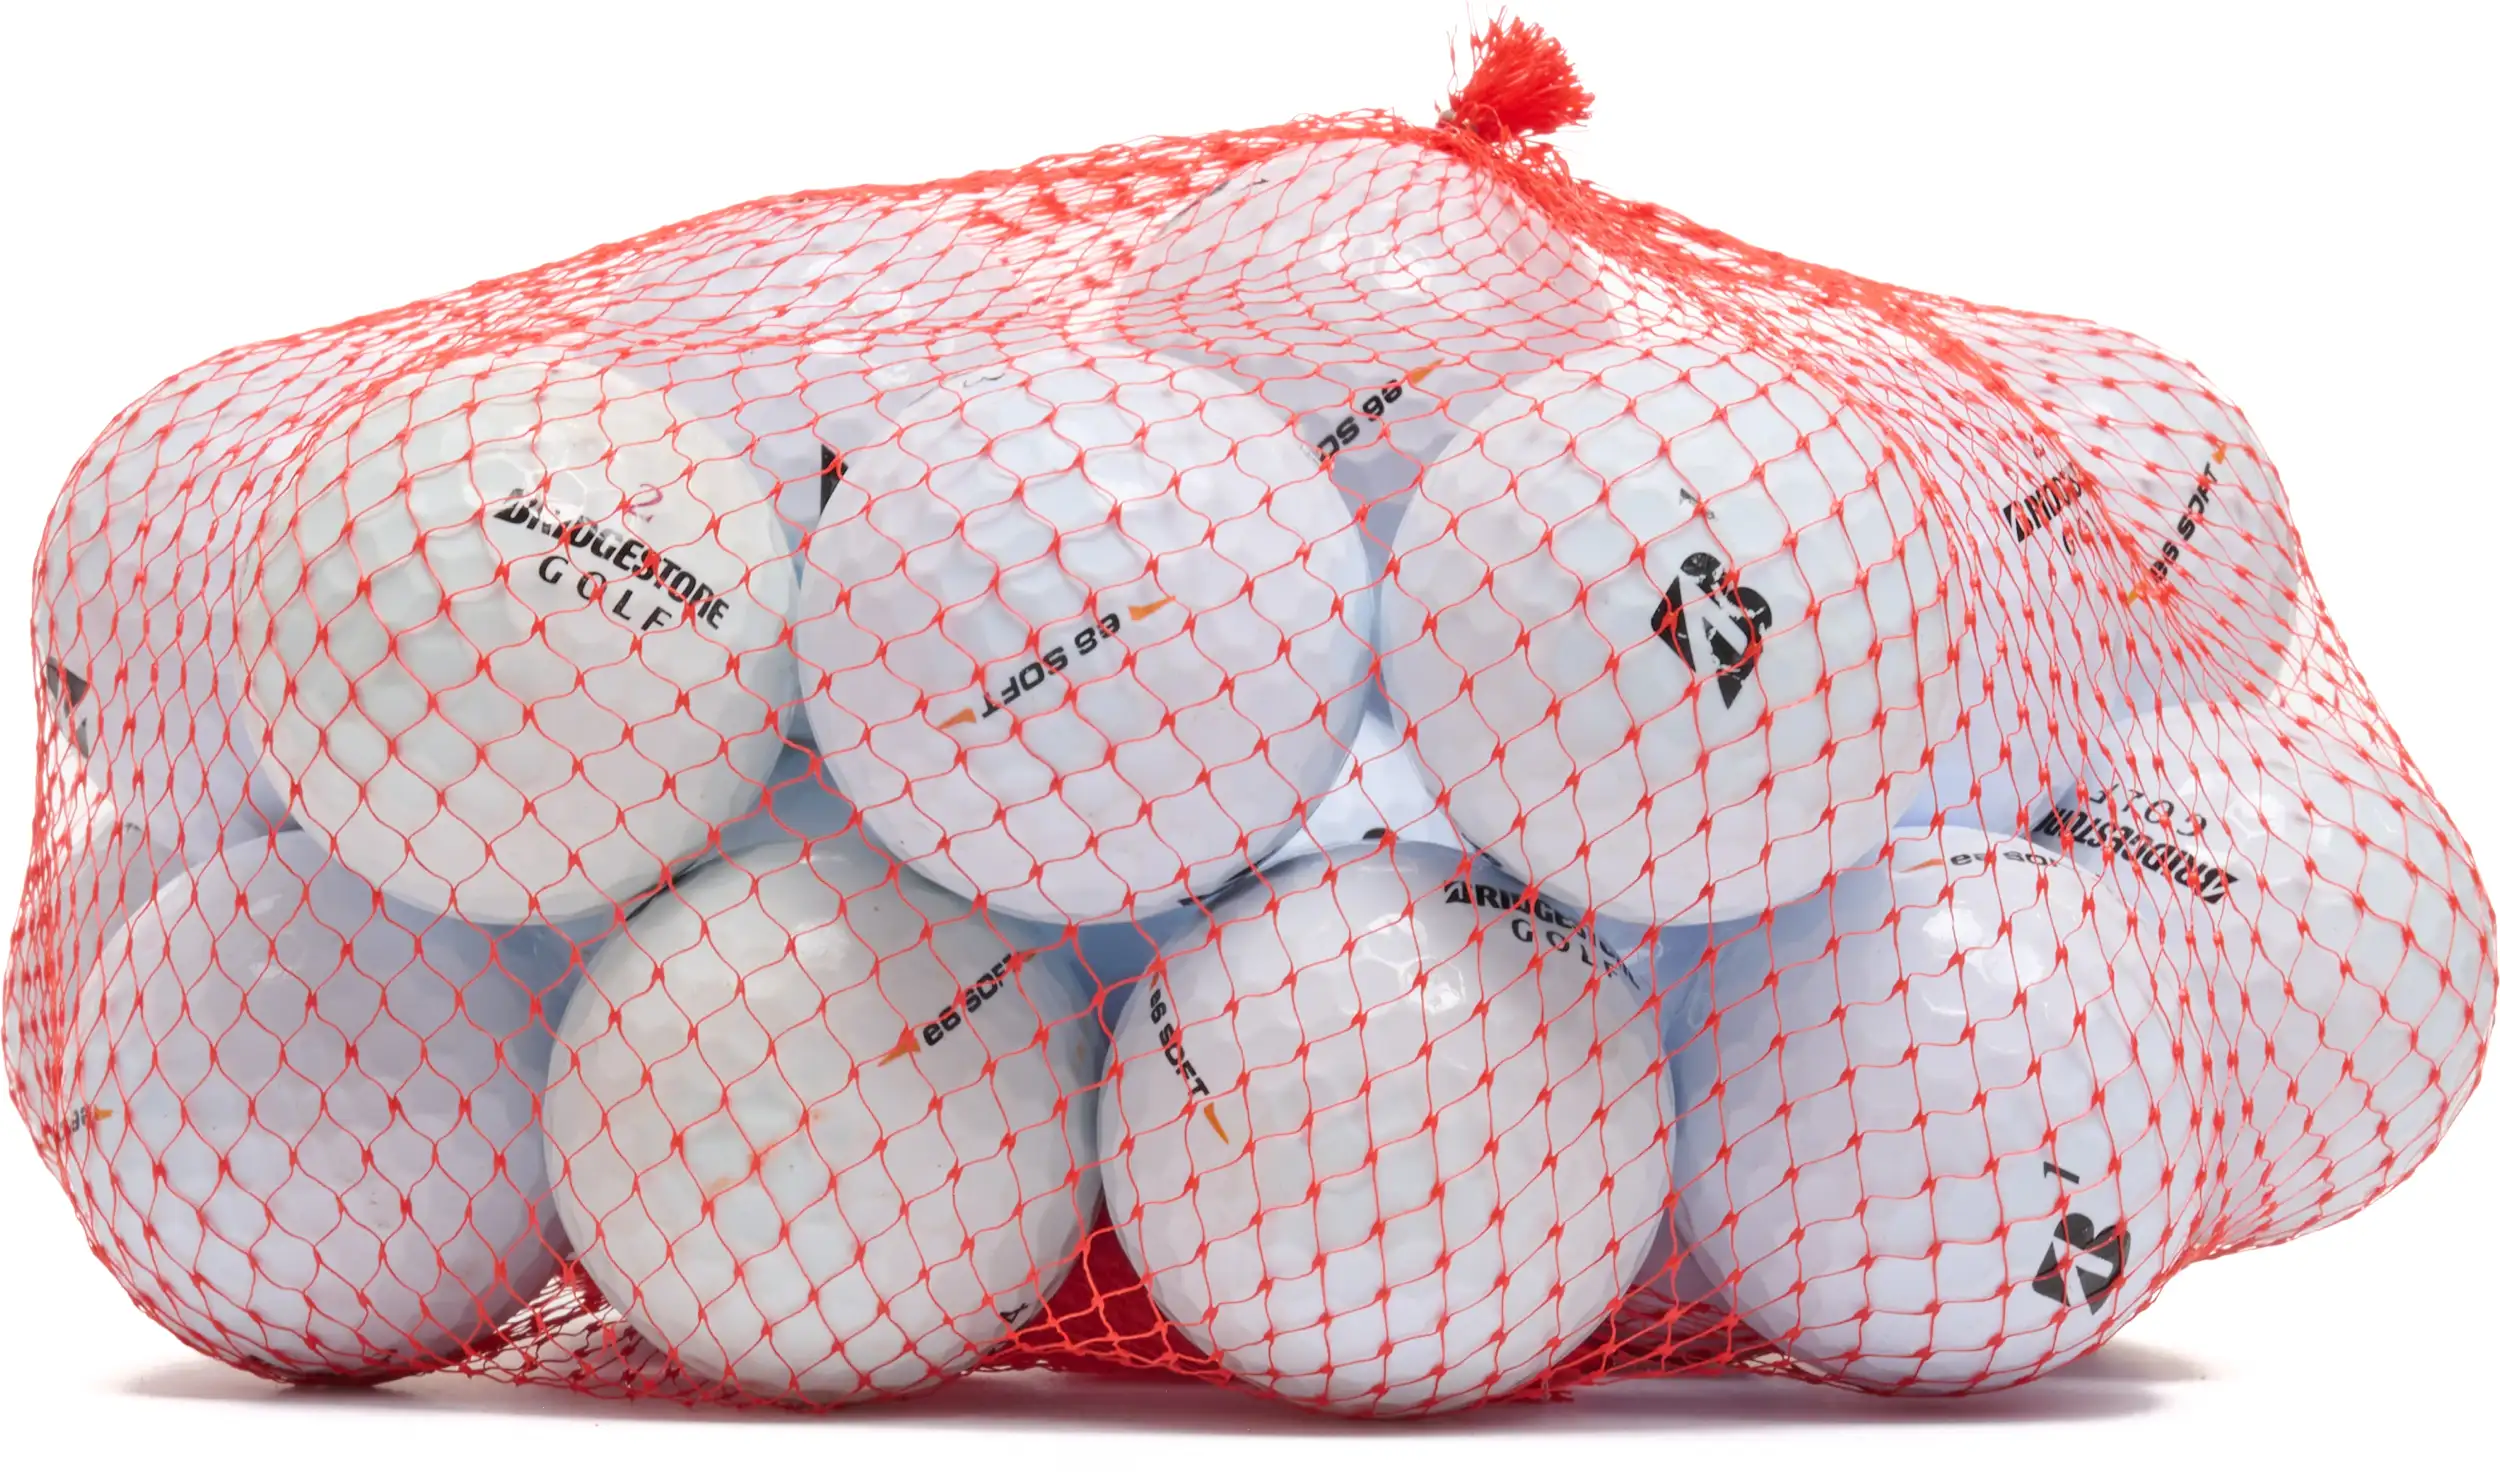 25 Bridgestone e6 Soft Lakeballs